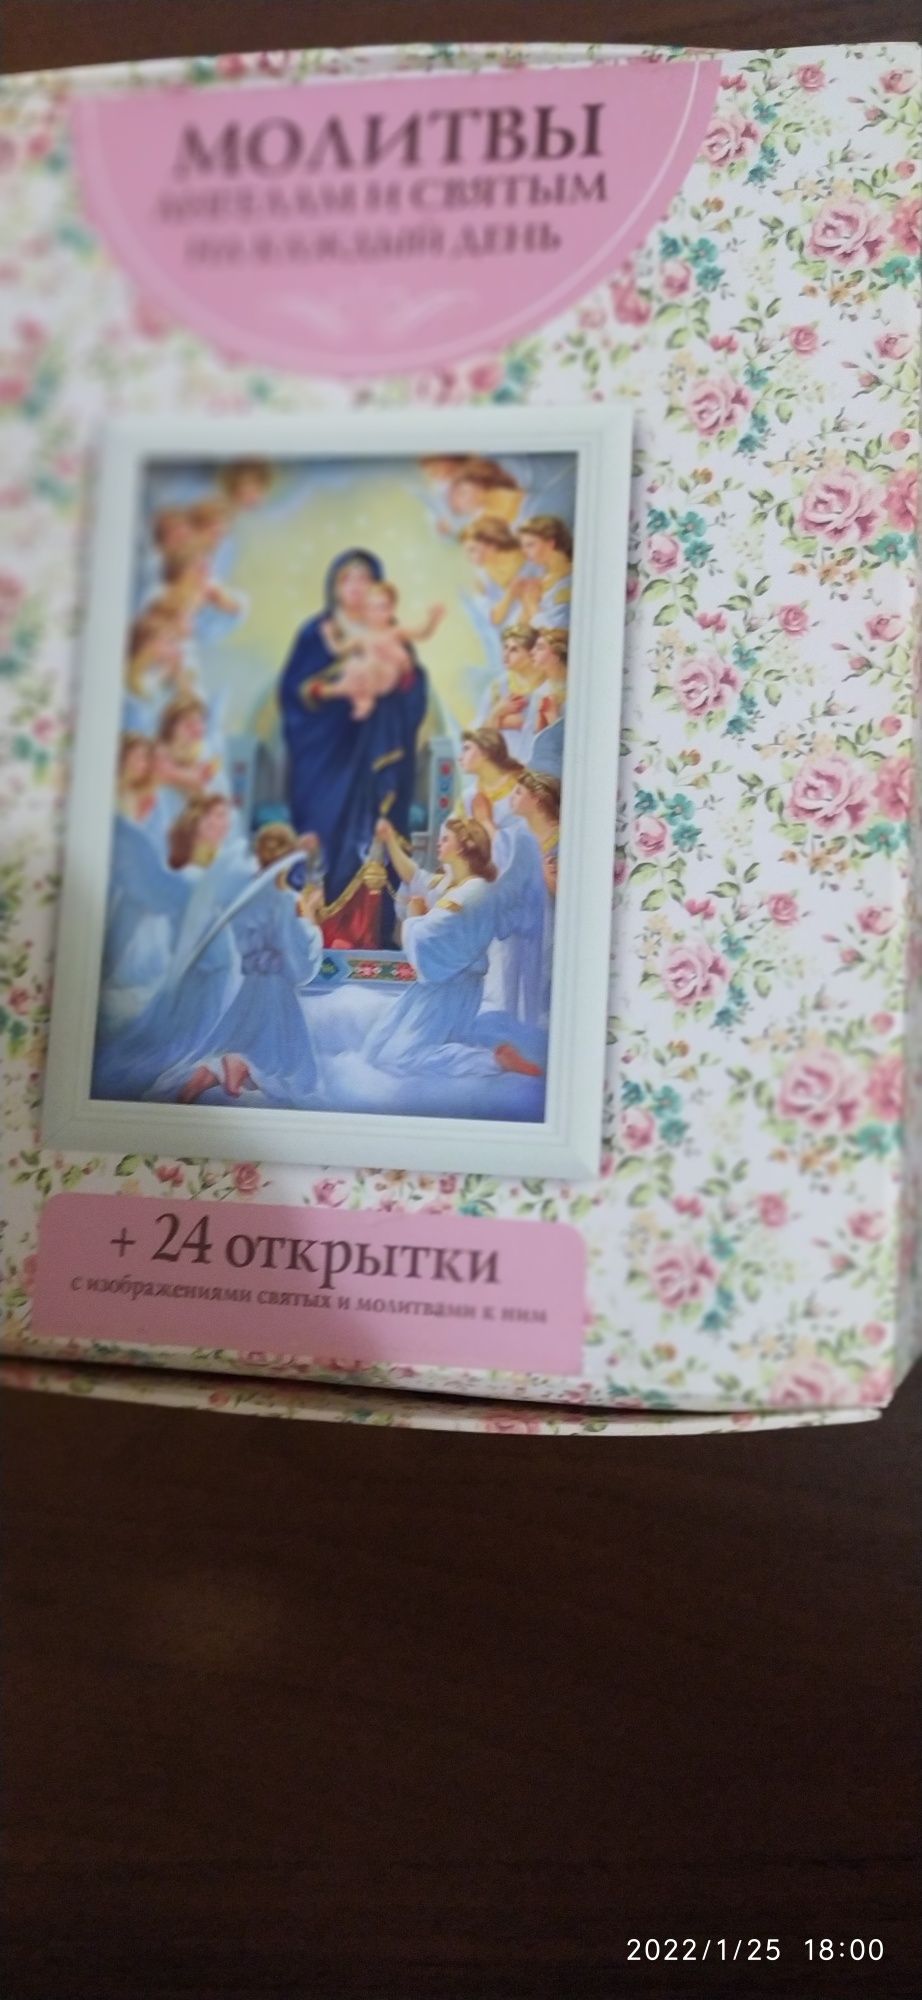 Продам Книгу Молитвы ко всем Святым  плюс 24 открытки со святыми